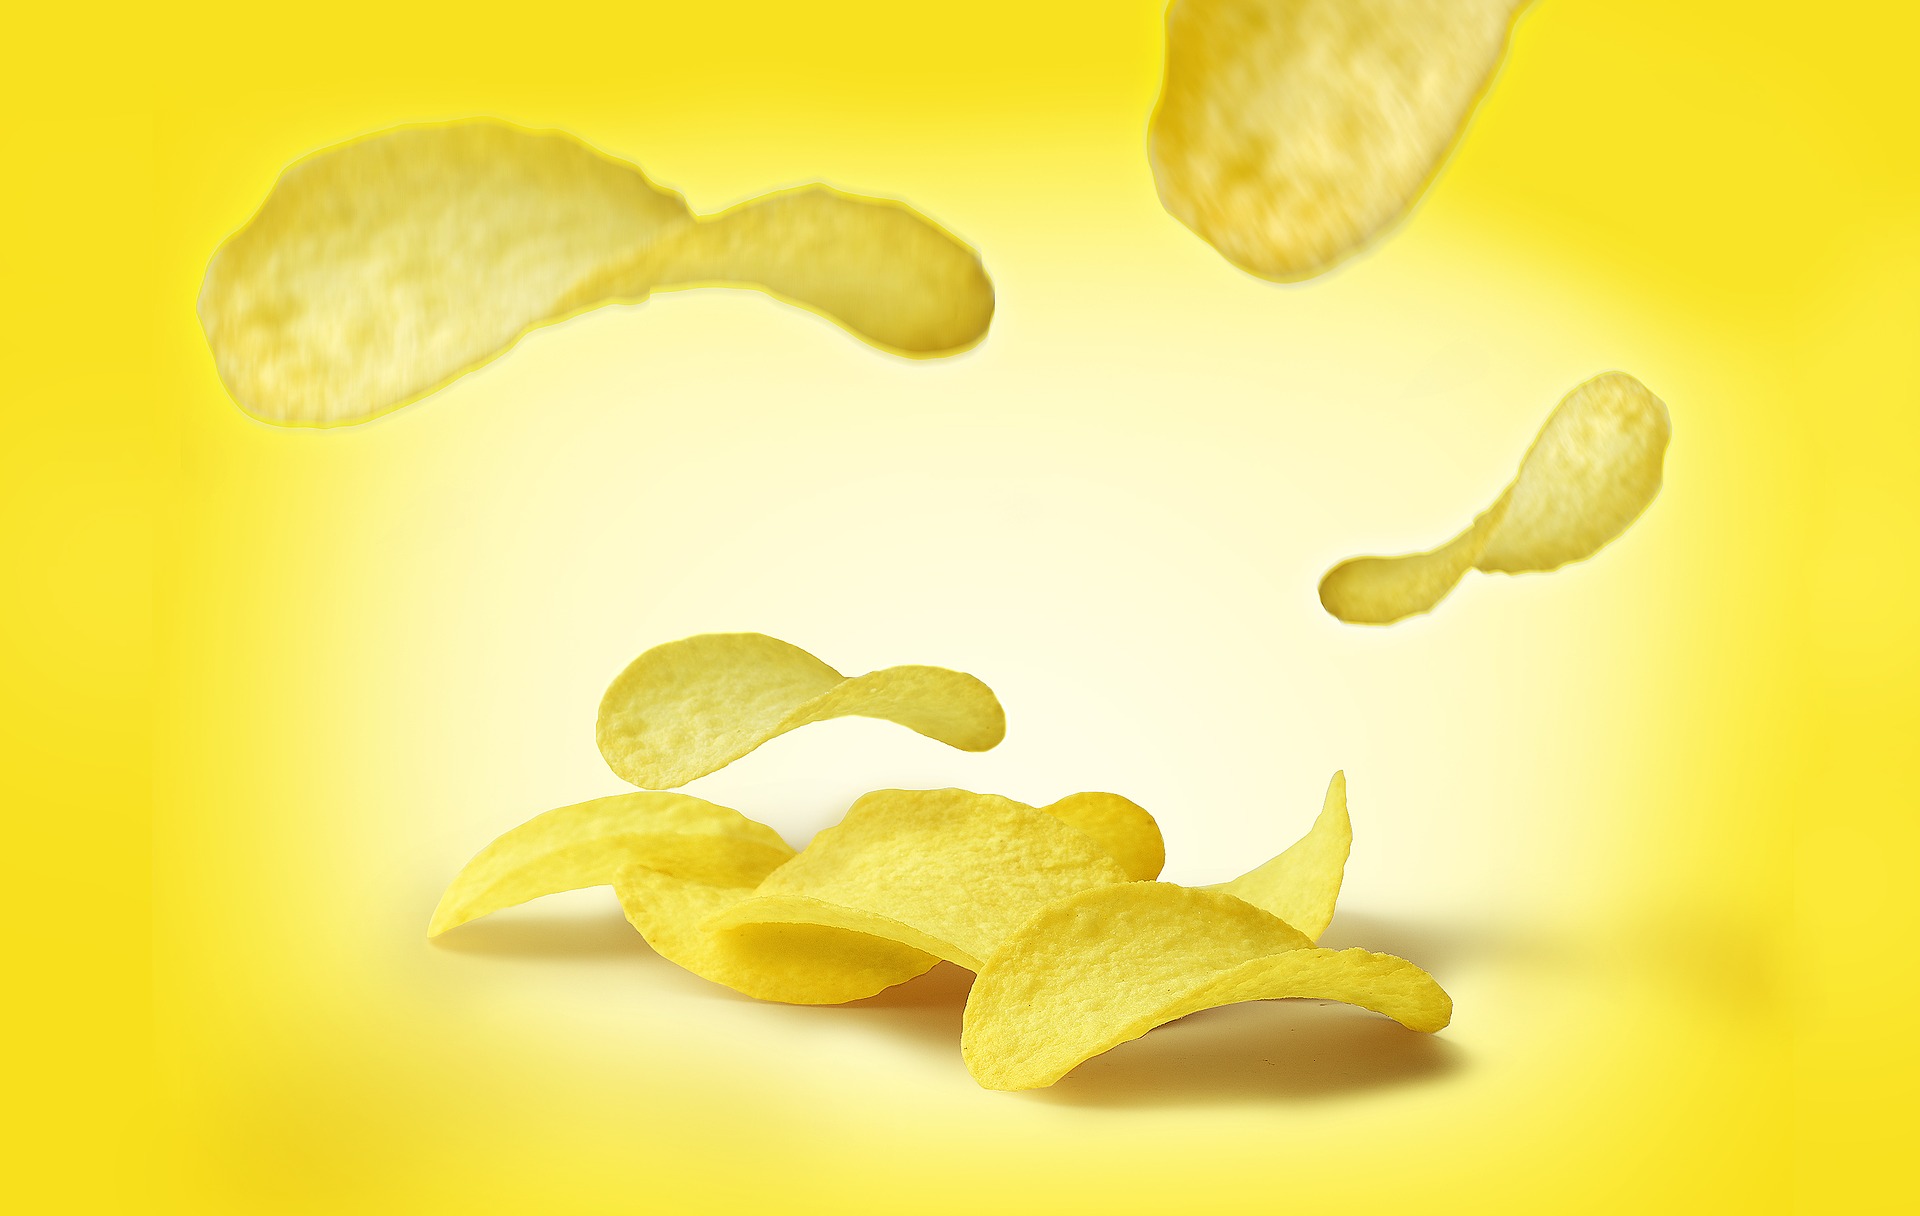 Chips is verslavend